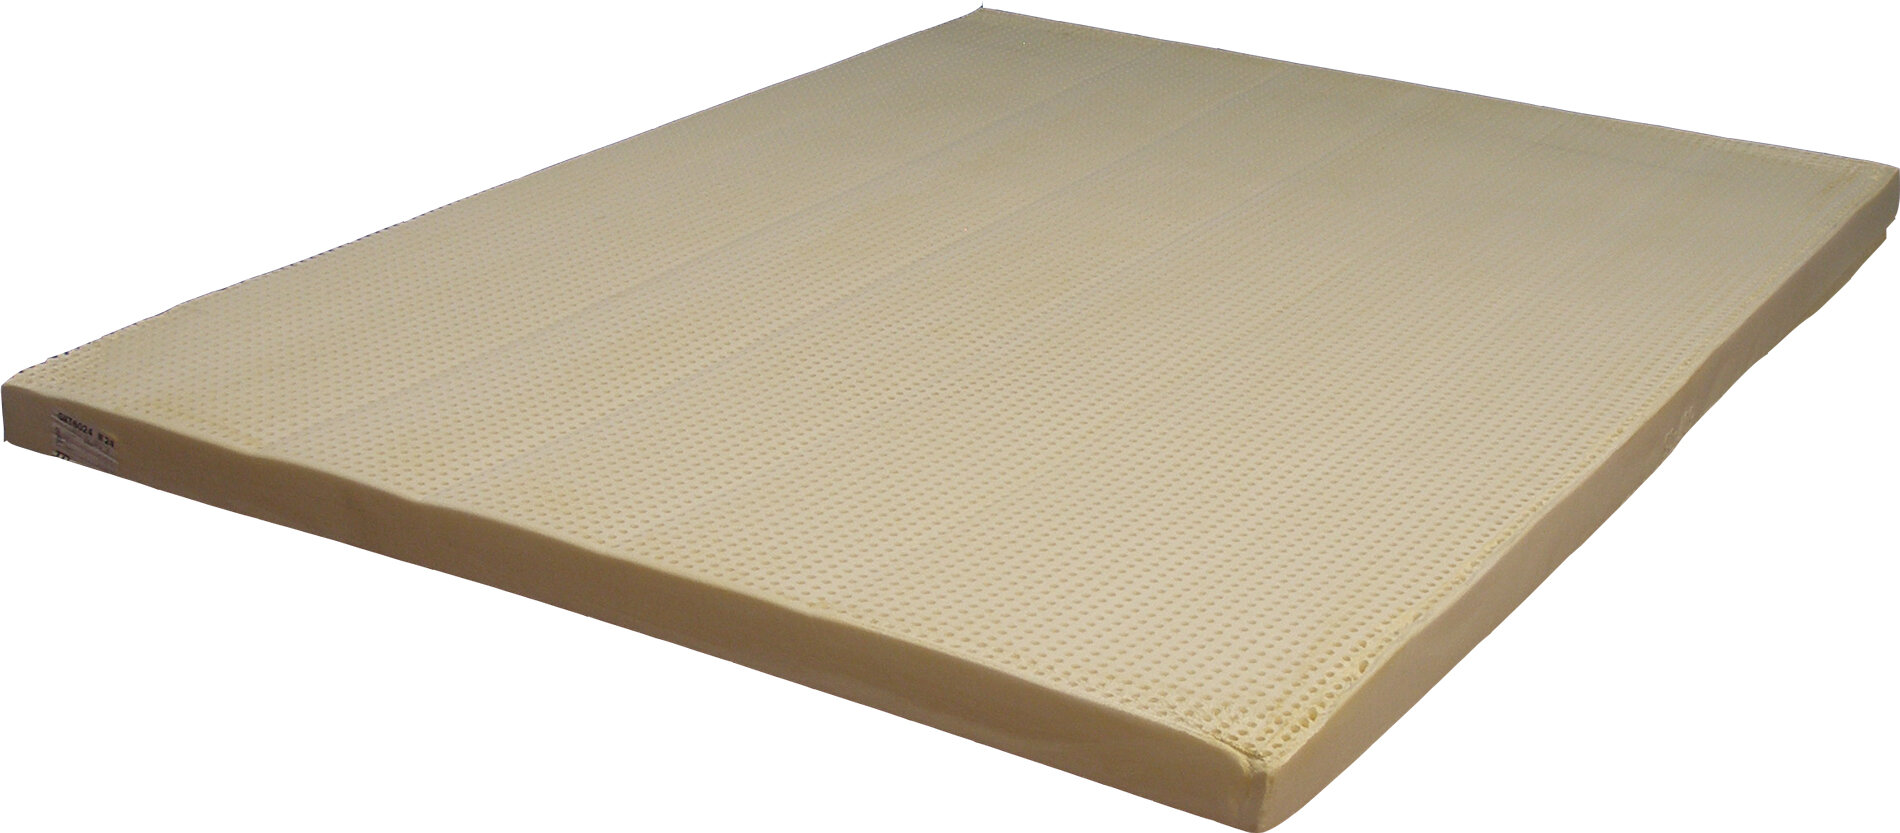 latex foam camper mattress